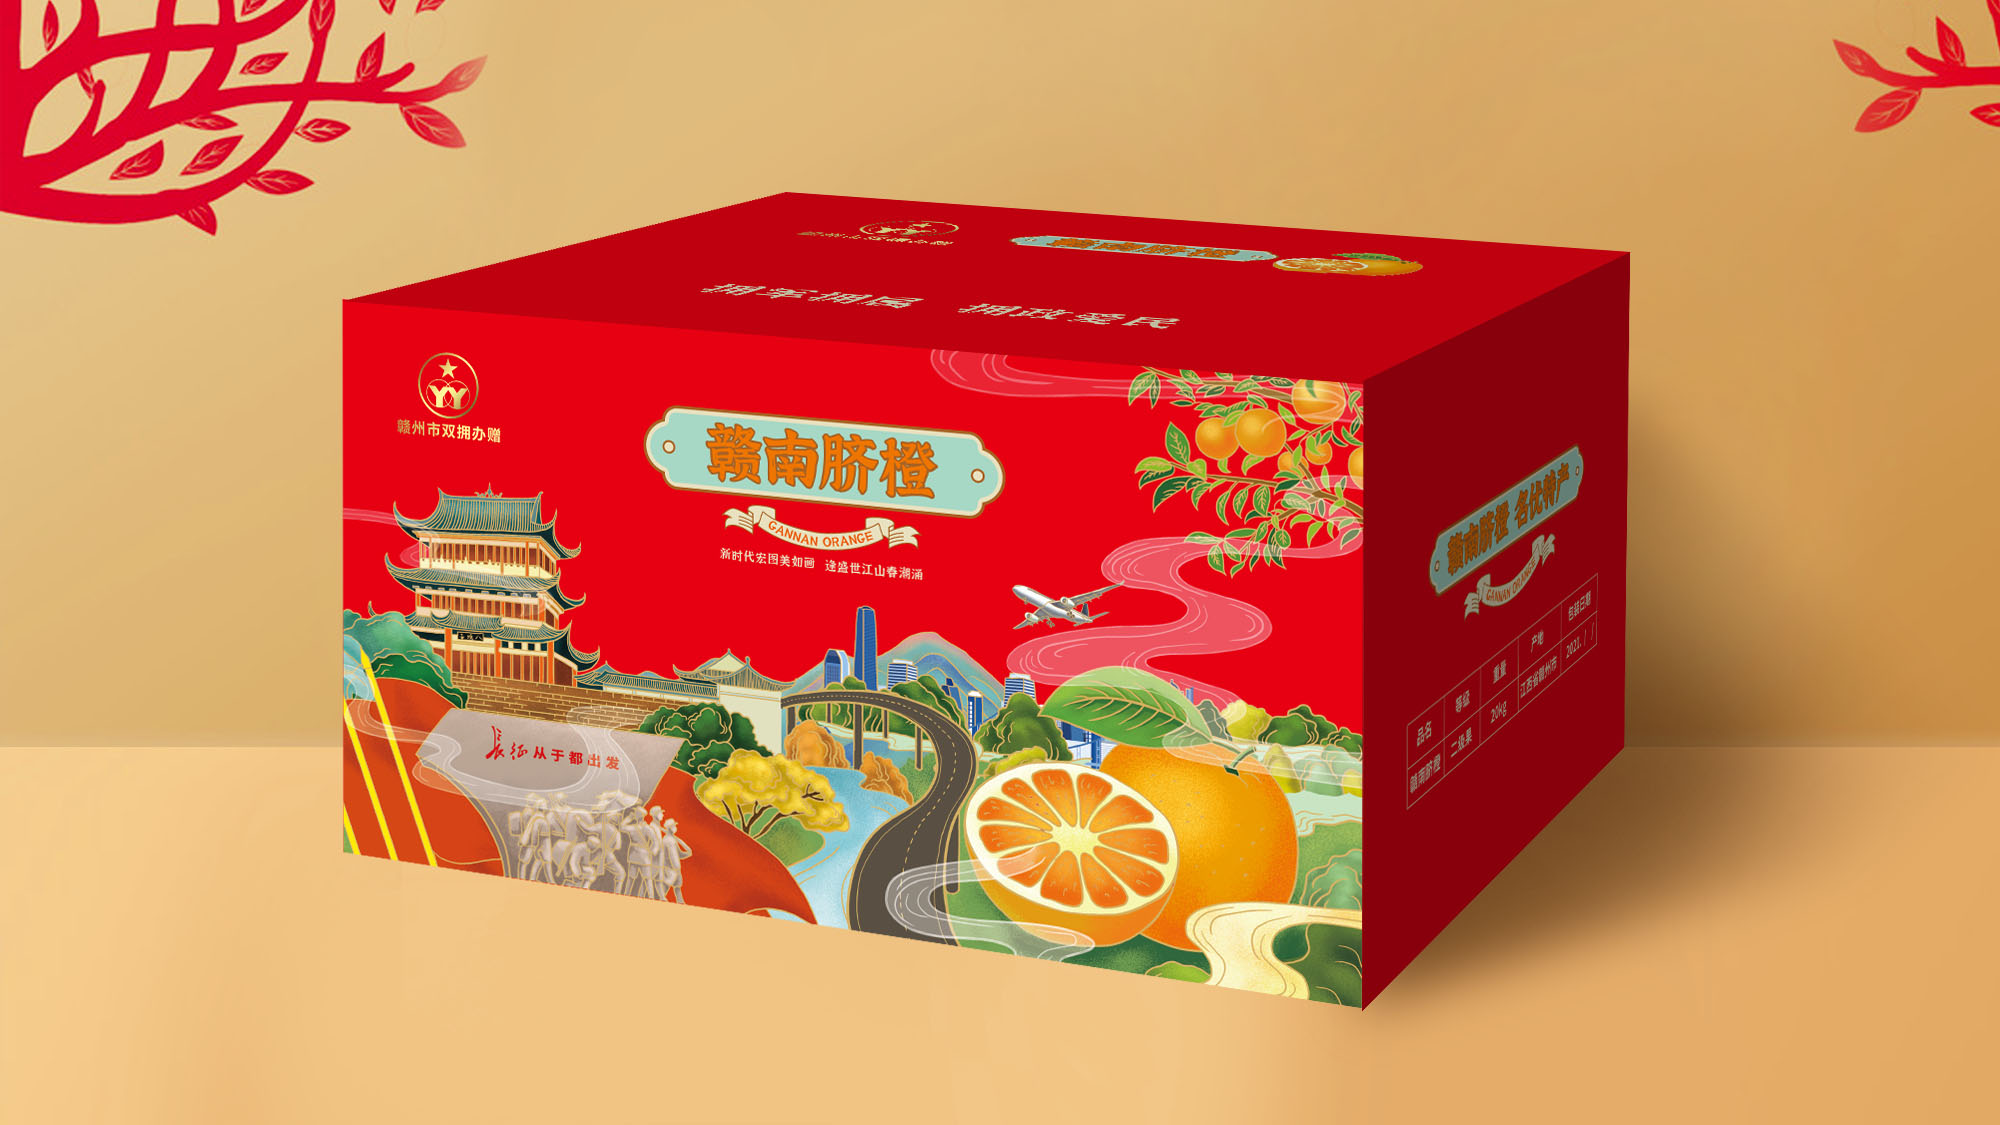 赣州丰龙水果包装箱设计